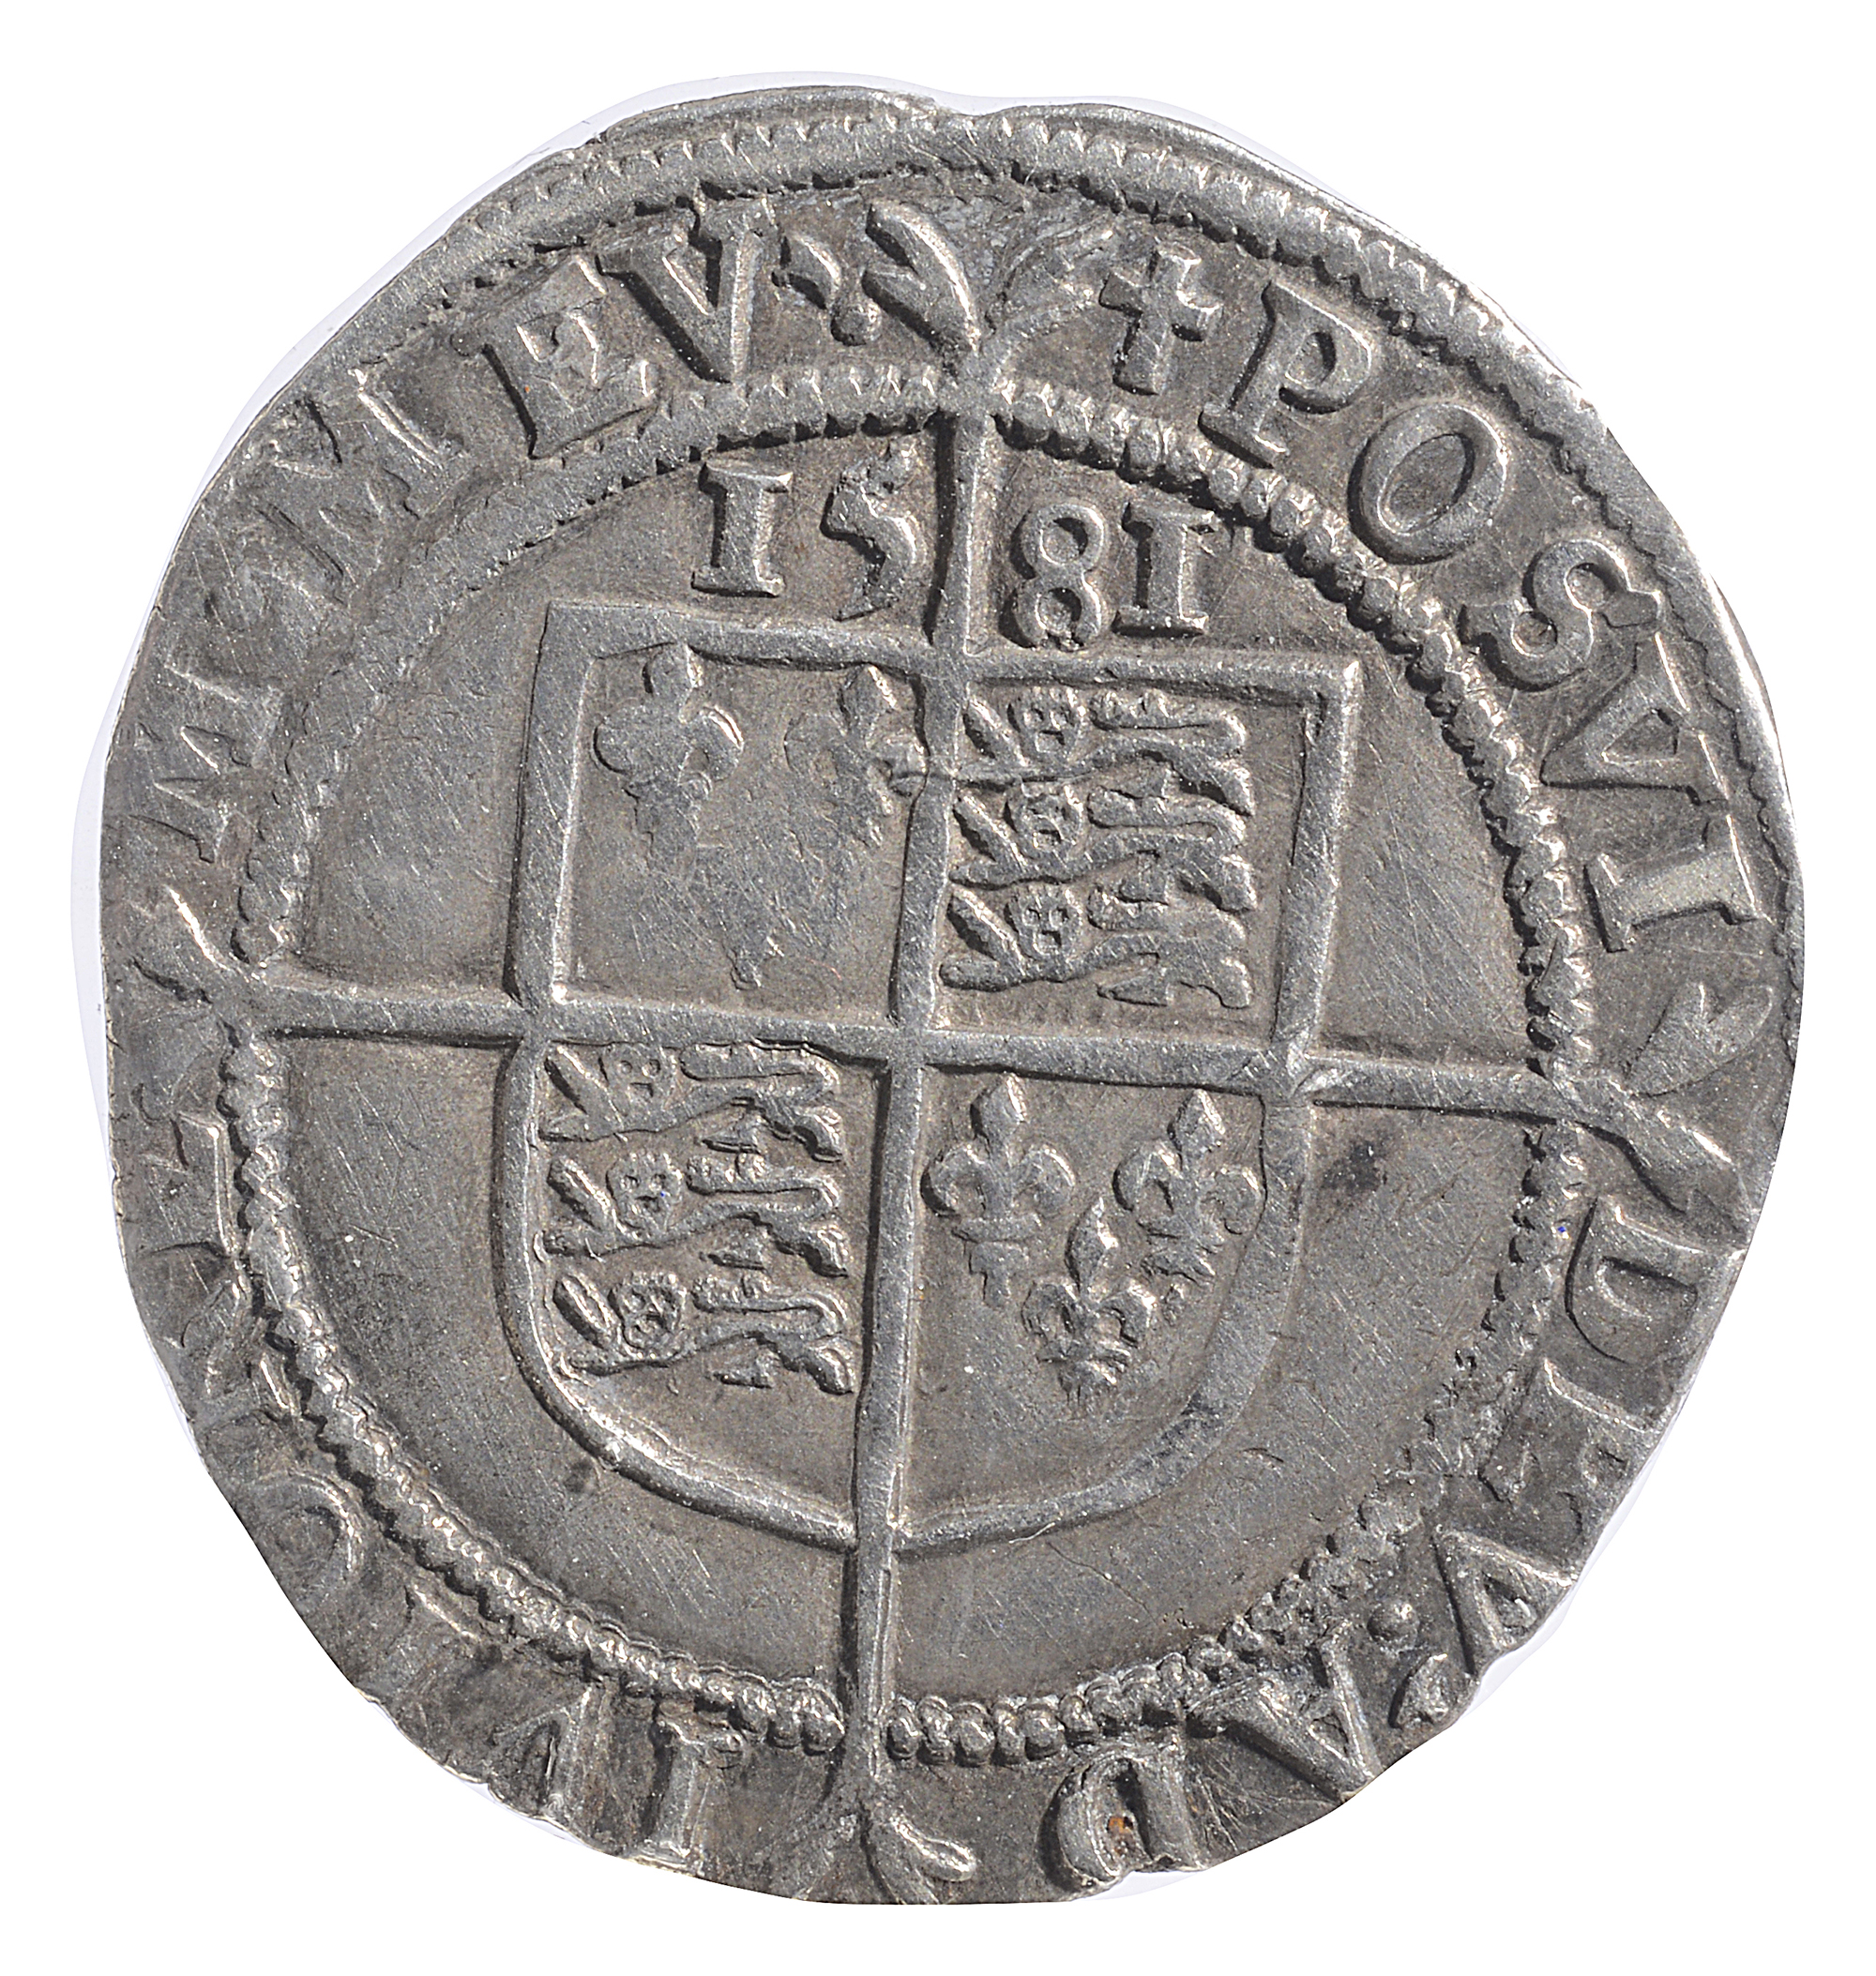 Elizabeth I (1558-1603) milled silver sixpence mint mark Latin Cross, ELIZABETH D G ANG FRA ET HIB - Image 2 of 2